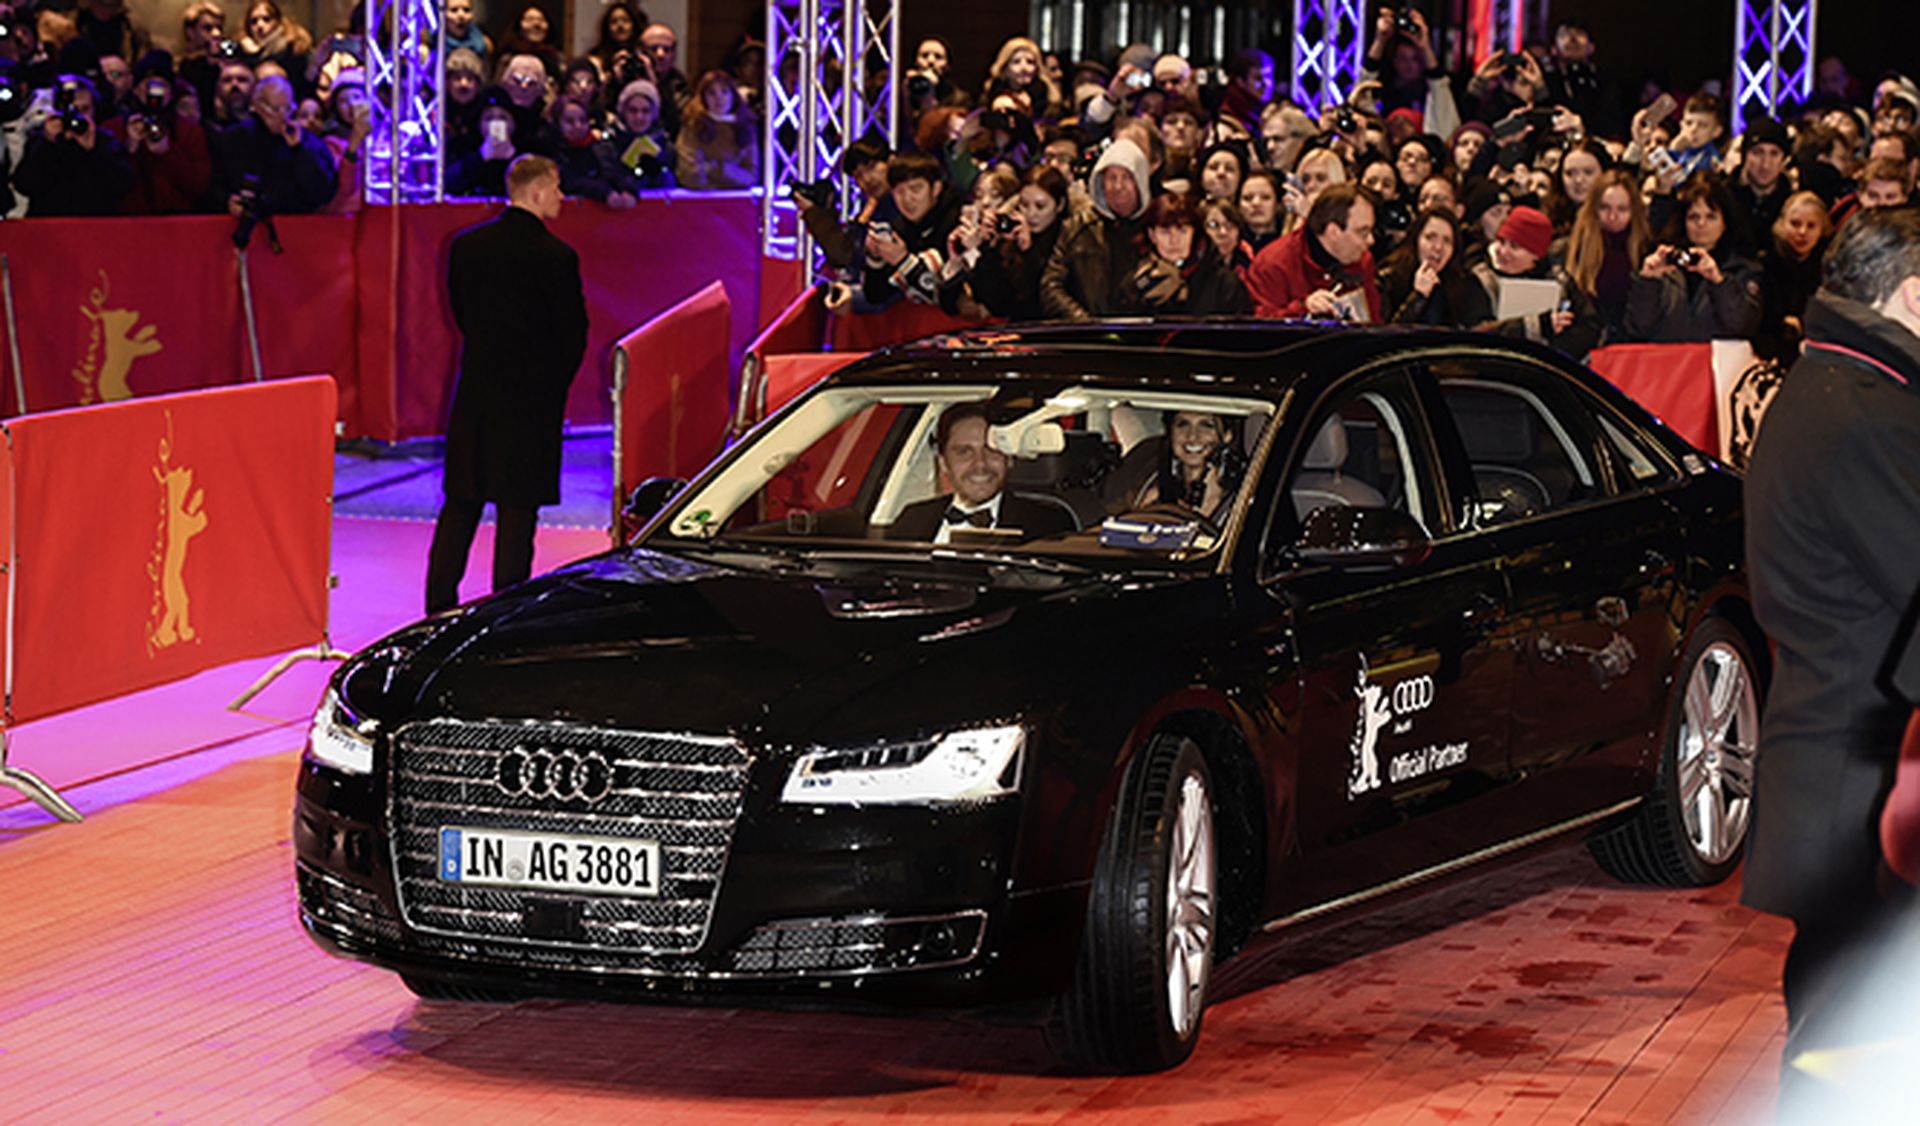 Audi autónomo Festival de Cine Berlinale